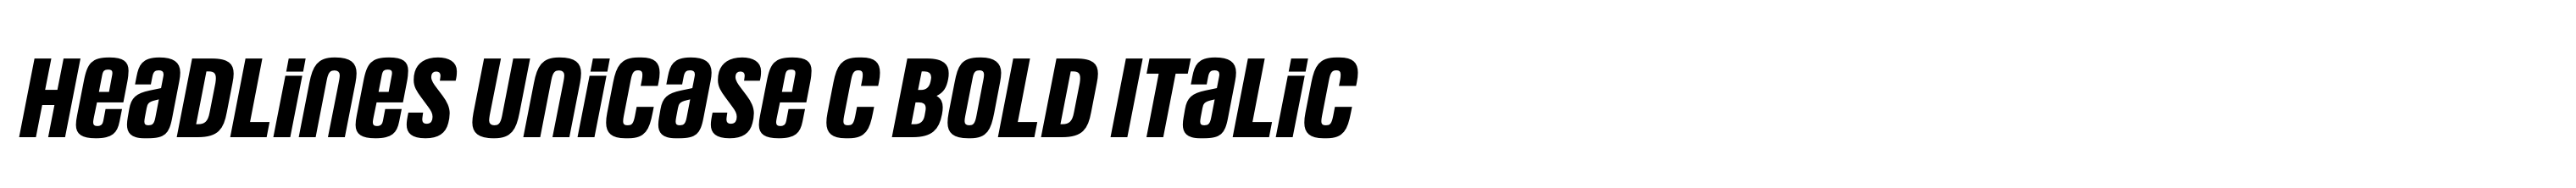 Headlines Unicase C Bold Italic